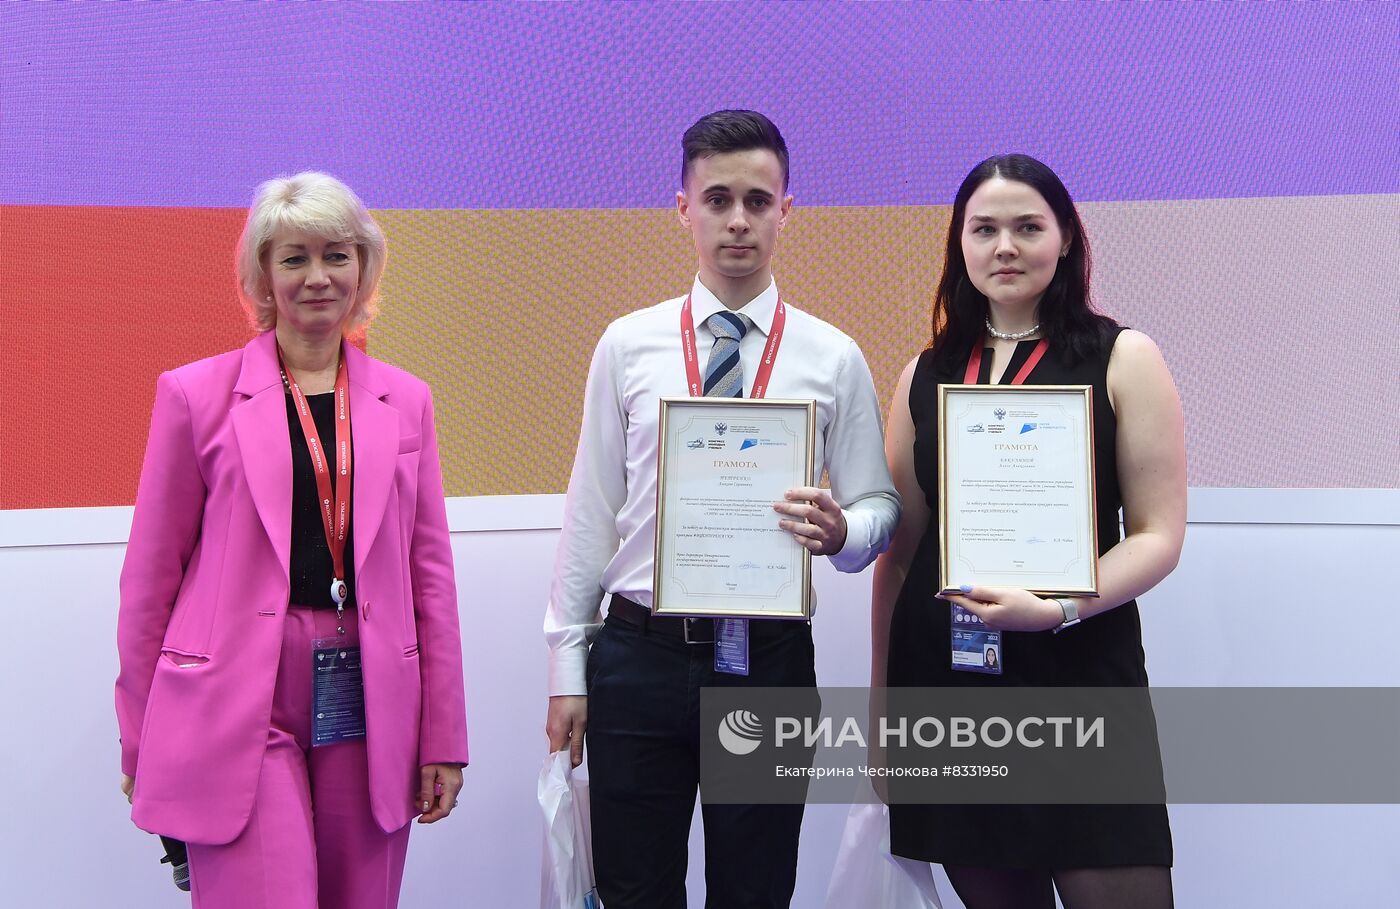 II КМУ-2022. Церемония награждения победителей Всероссийского молодежного конкурса научных проектов #ВЦЕНТРЕНАУКИ